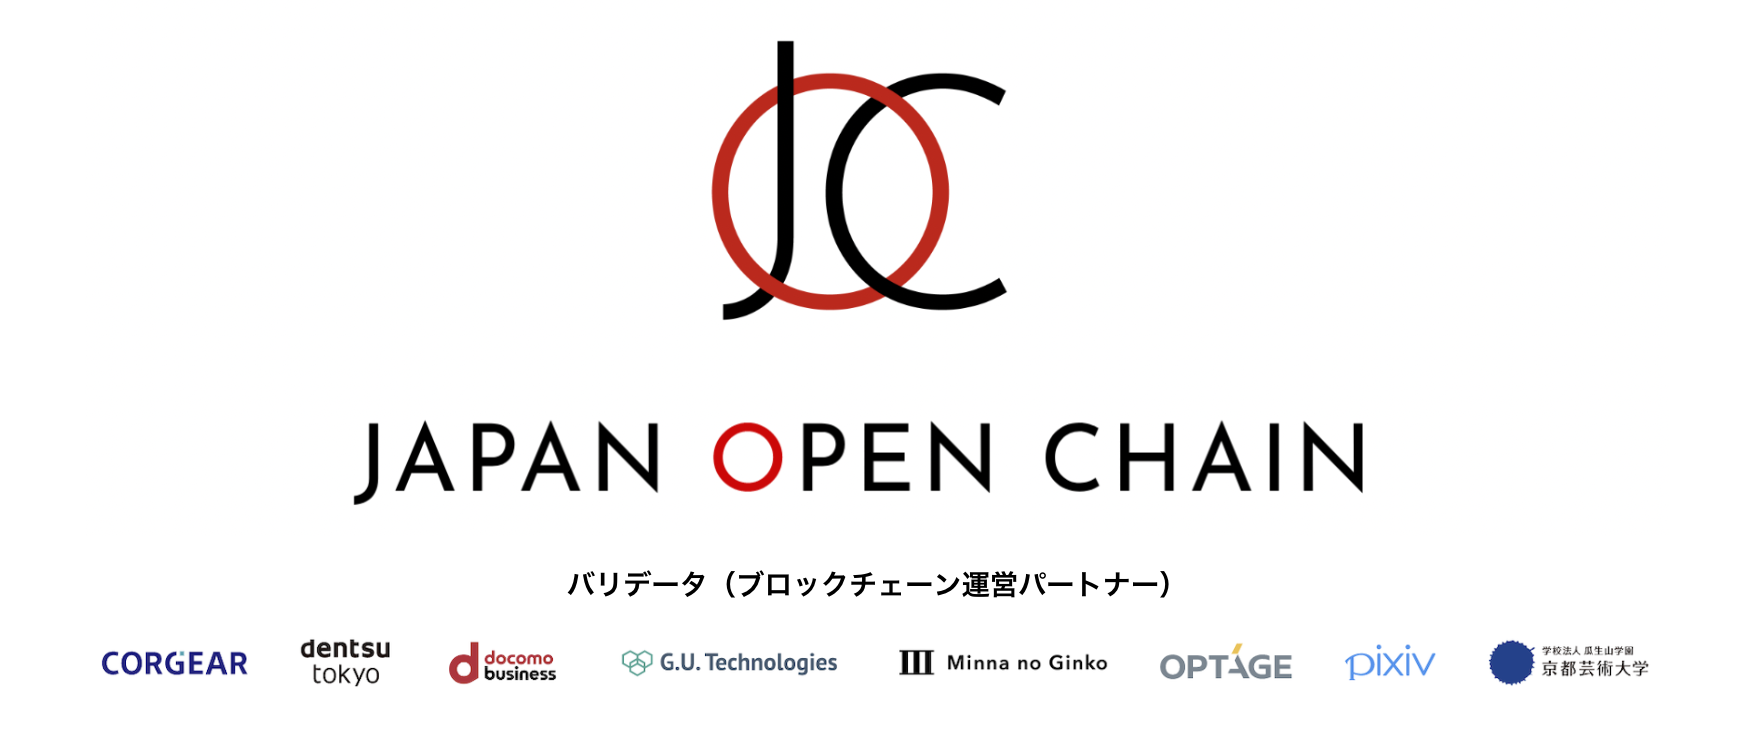 Japan Open Chain